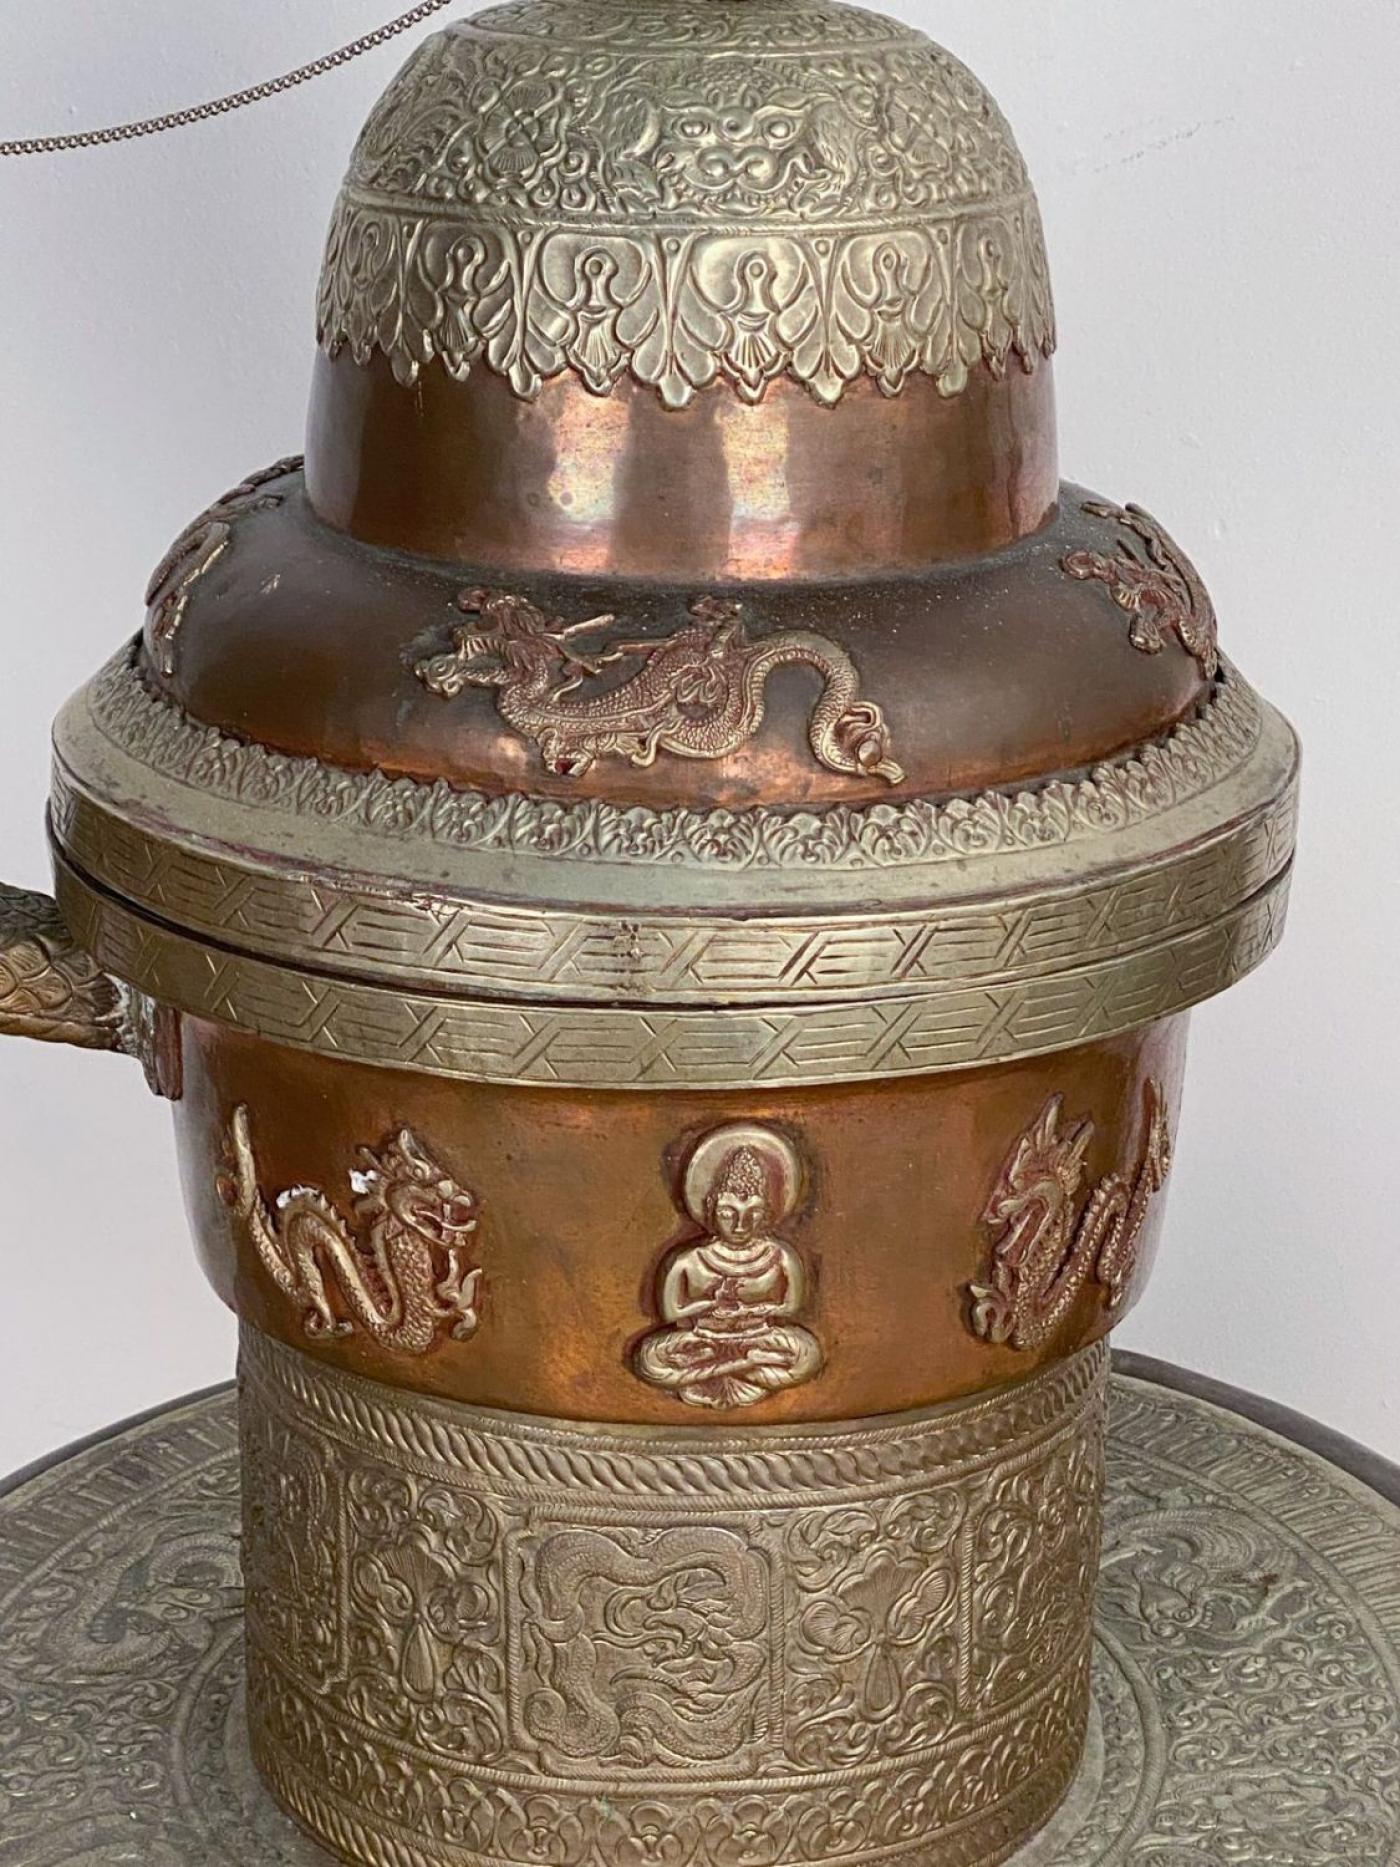 Enormous Mongolian Tea Pot, a Gift to a Diplomat, circa 1970